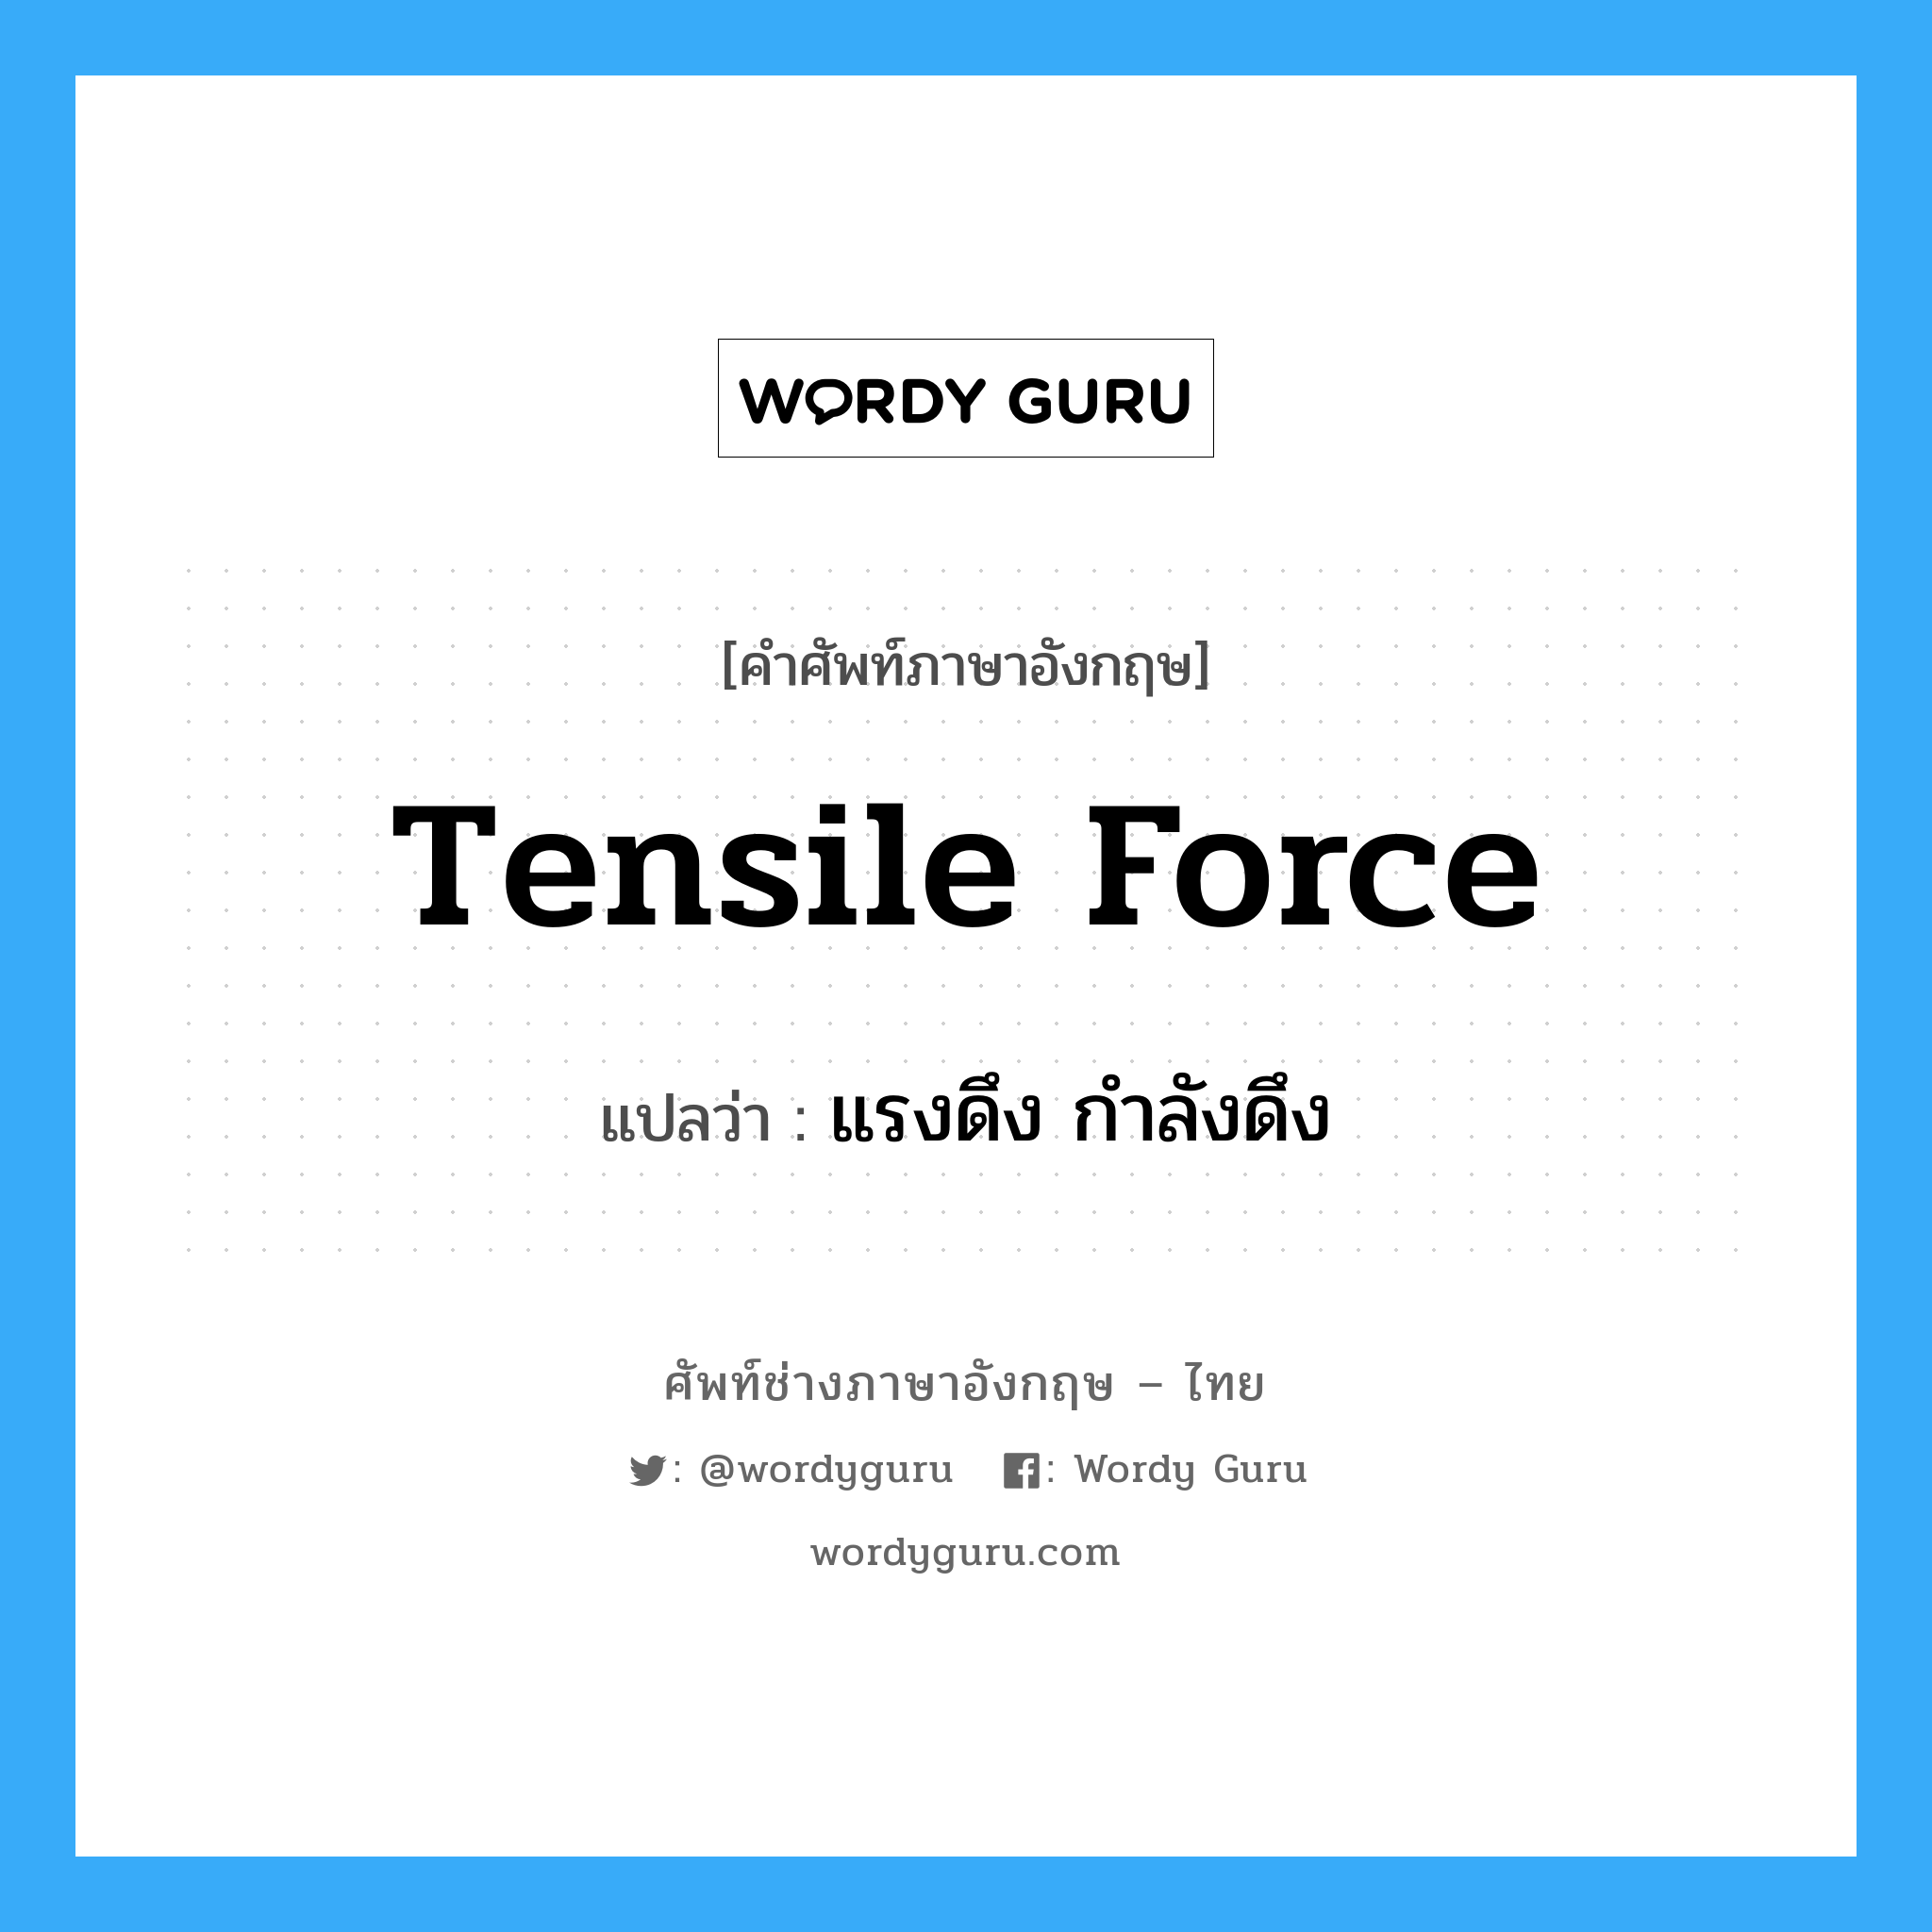 tensile force แปลว่า?, คำศัพท์ช่างภาษาอังกฤษ - ไทย tensile force คำศัพท์ภาษาอังกฤษ tensile force แปลว่า แรงดึง กำลังดึง